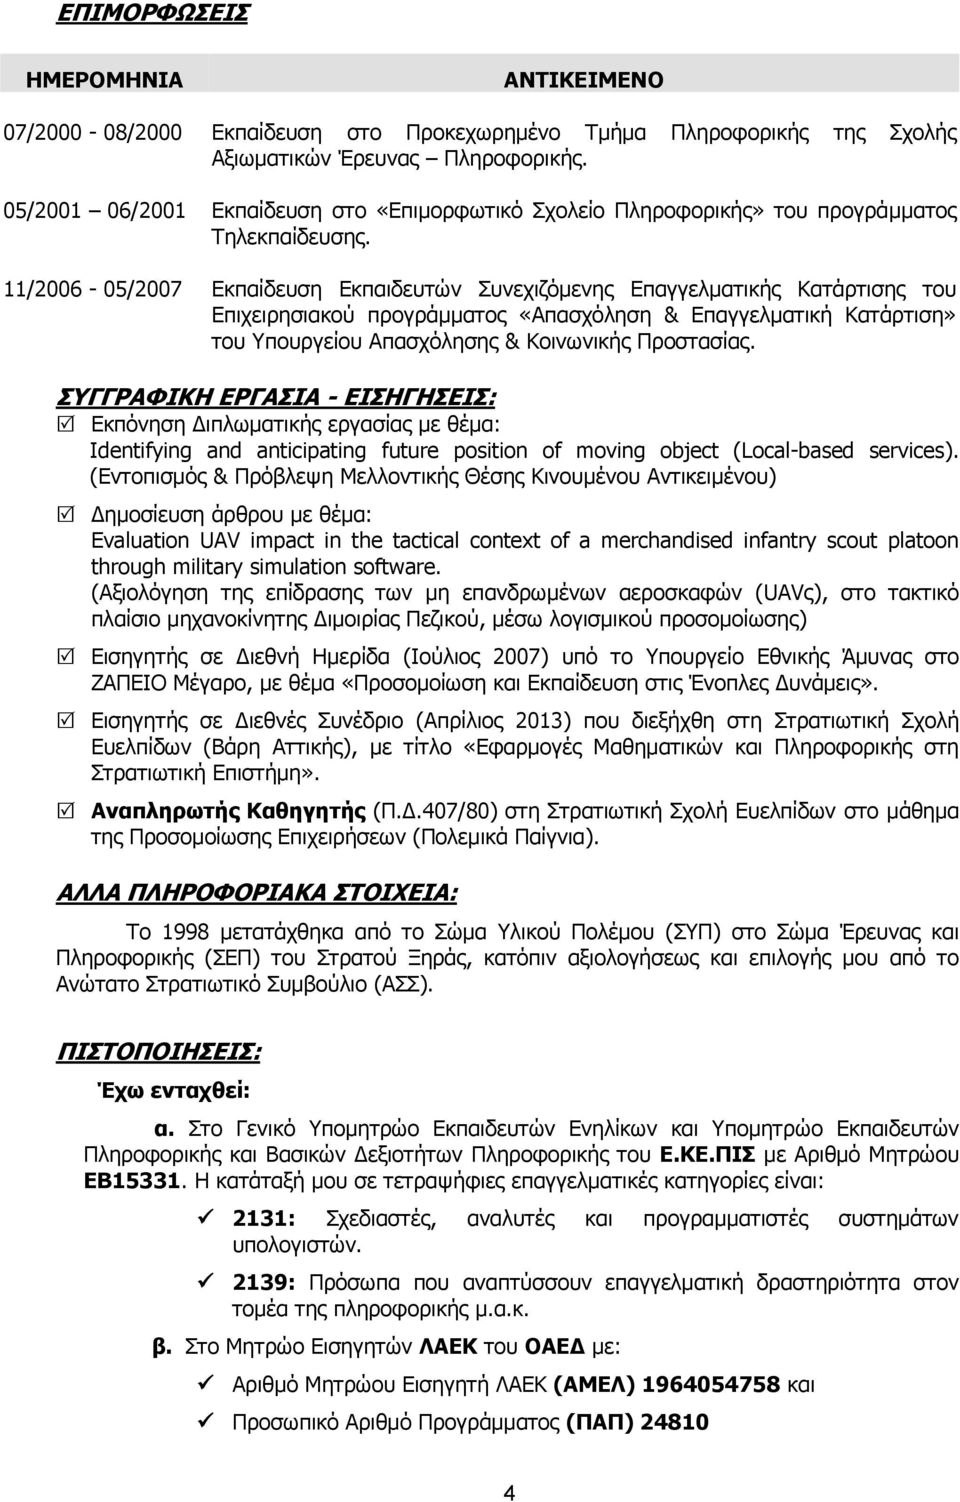 11/2006-05/2007 Εκπαίδευση Εκπαιδευτών Συνεχιζόμενης Επαγγελματικής Κατάρτισης του Επιχειρησιακού προγράμματος «Απασχόληση & Επαγγελματική Κατάρτιση» του Υπουργείου Απασχόλησης & Κοινωνικής